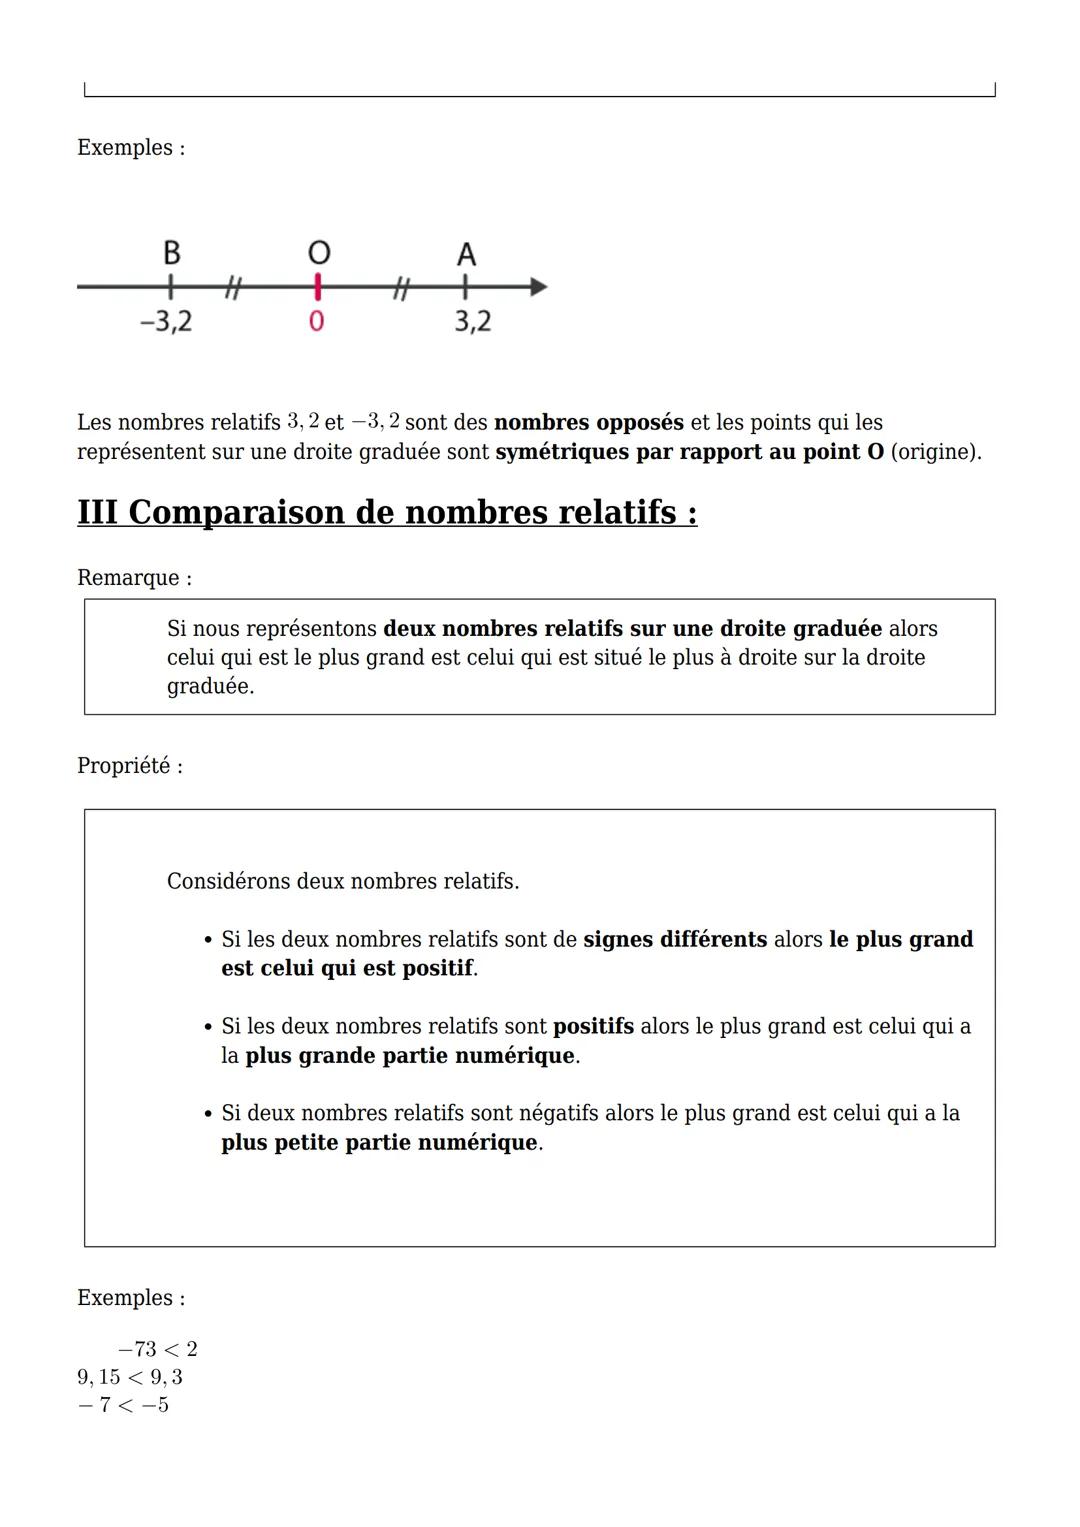 Cours 5ème
Maths-PDF
Créer selecharger imprimeren PDF
I Introduction aux nombres relatifs :
1.Activité d'introduction :
30
20
10
2016 目
10
2